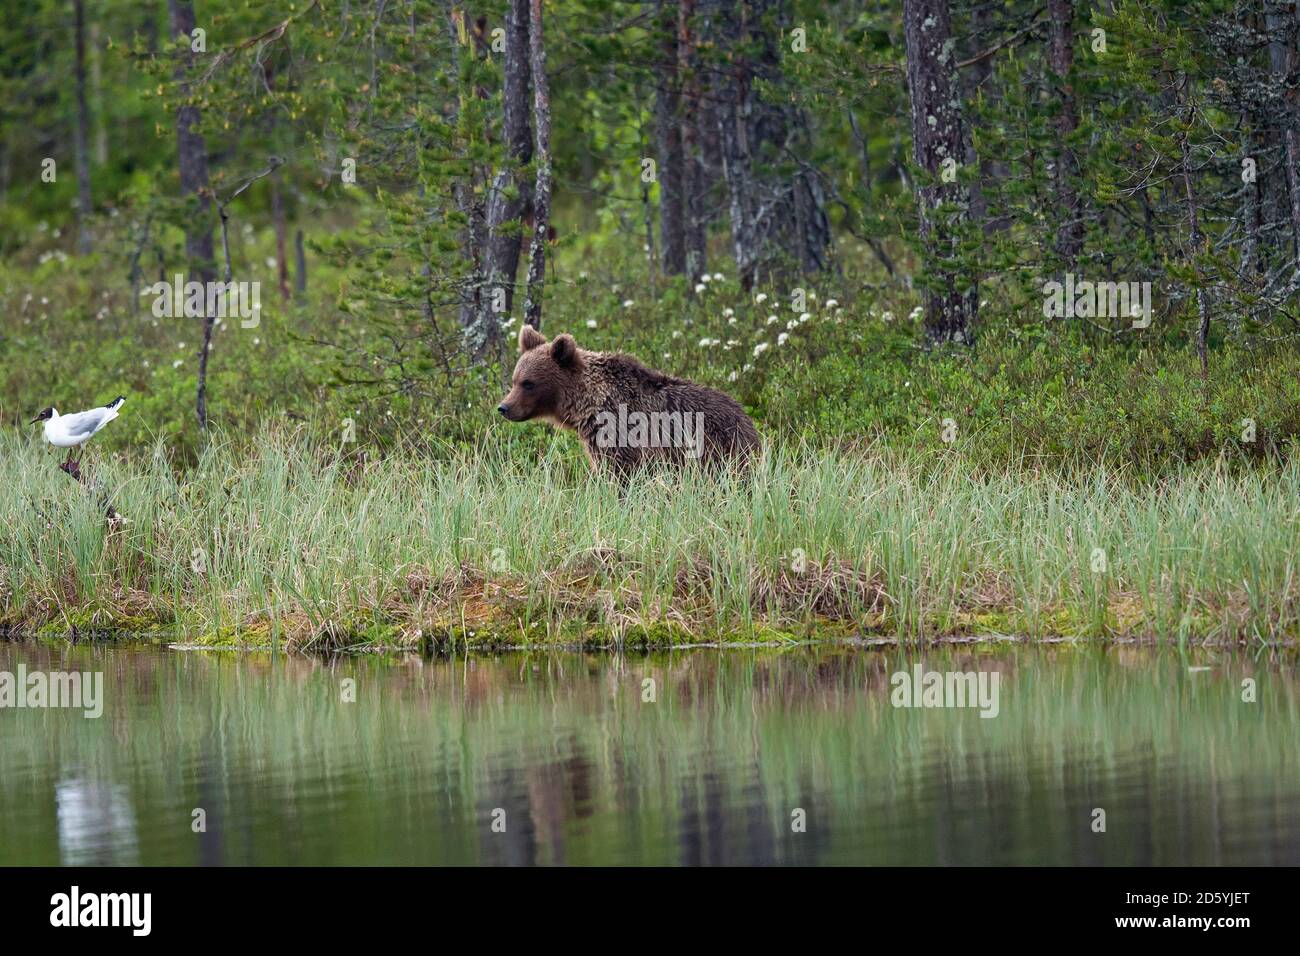 Finnland, Kuhmo, Braunbären beobachten Lachmöwe Stockfoto